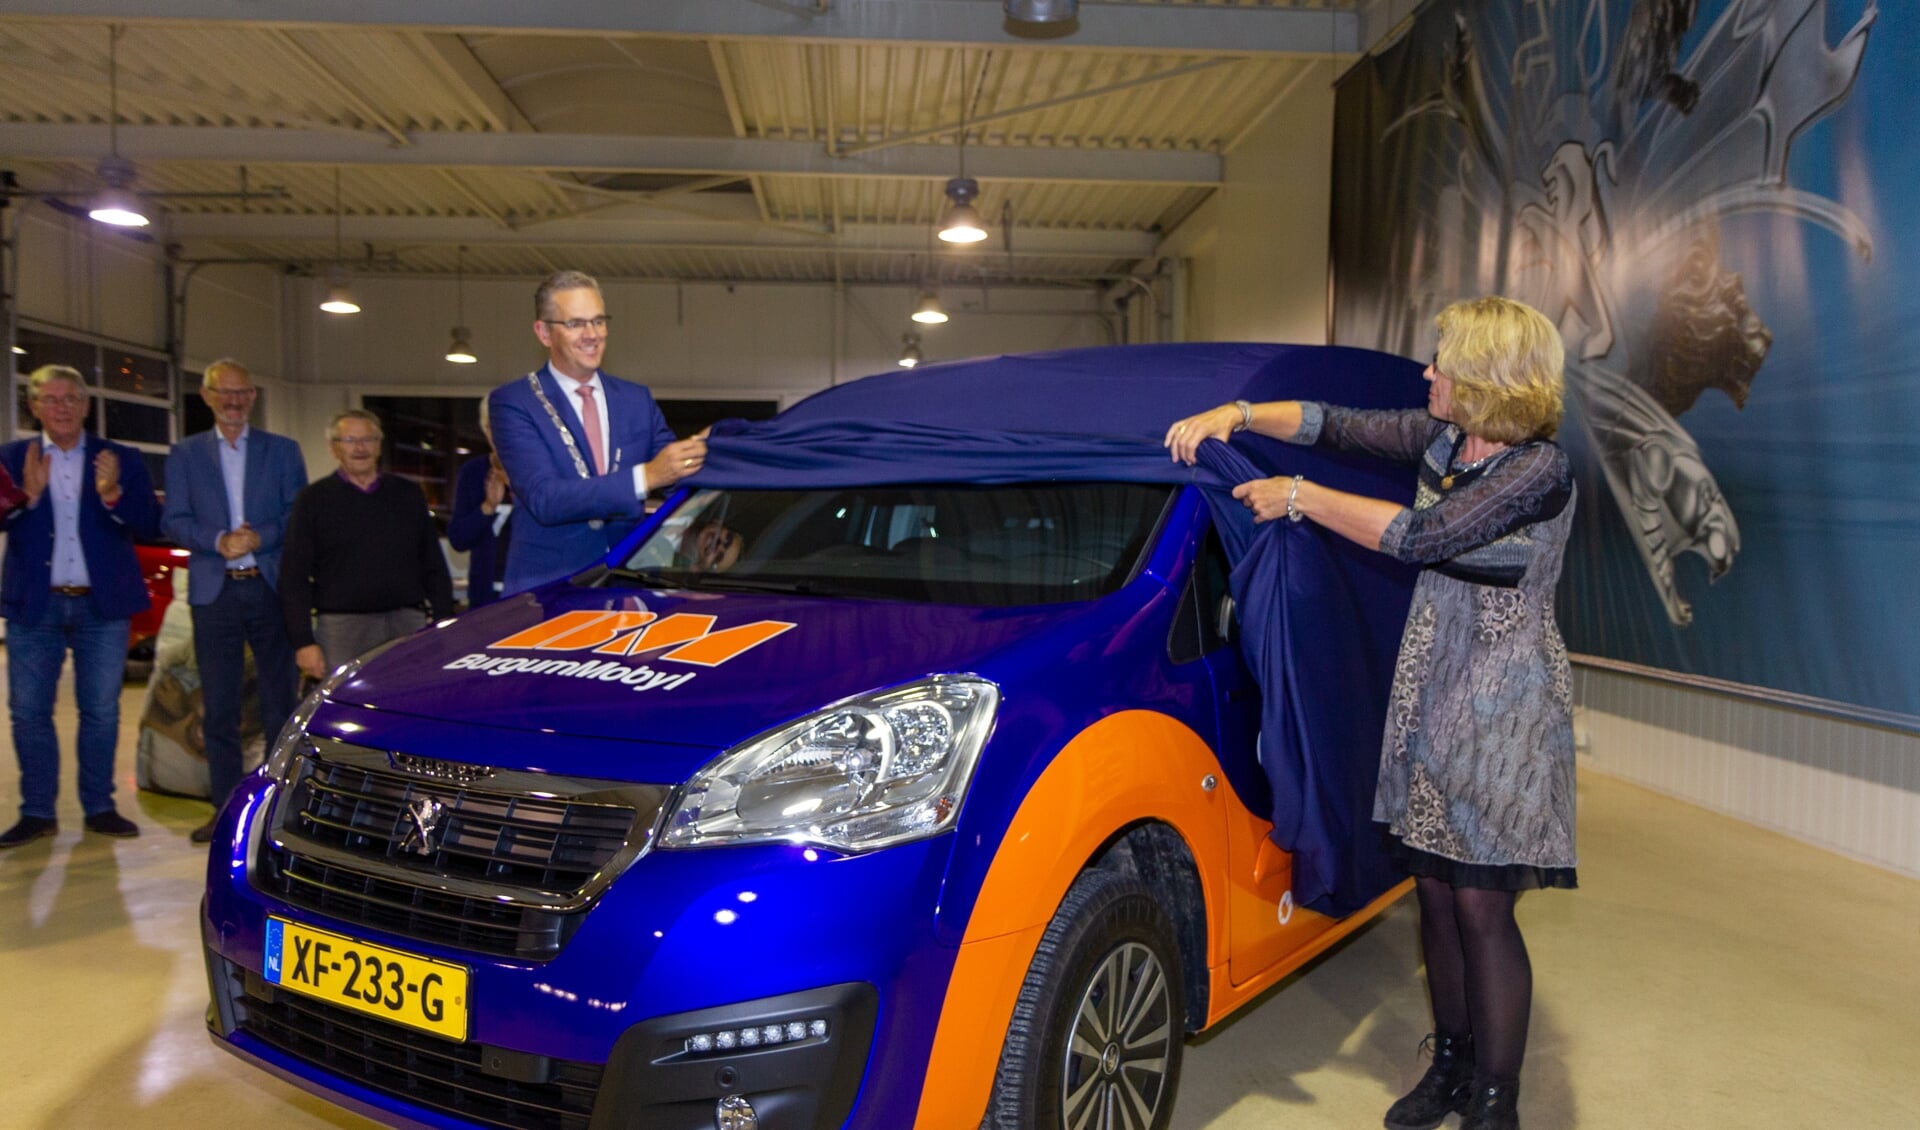 De lancering van de nieuwe, elektrische Burgum Mobyl-auto was in 2019. Het is de meest bekende vorm van 'lokaal' of 'regionaal' openbaar vervoer onder 50-plussers in Tytsjerksteradiel.